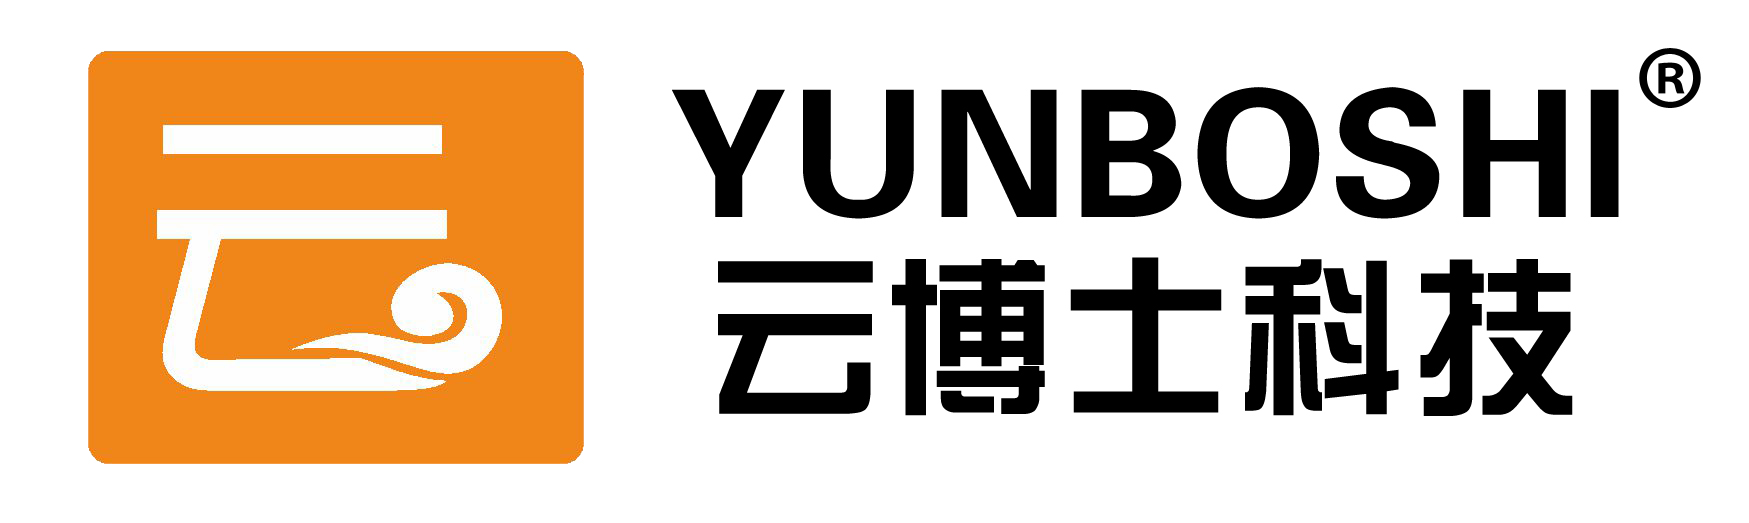 YUNBOSHI annuncia la conferenza del terzo trimestre